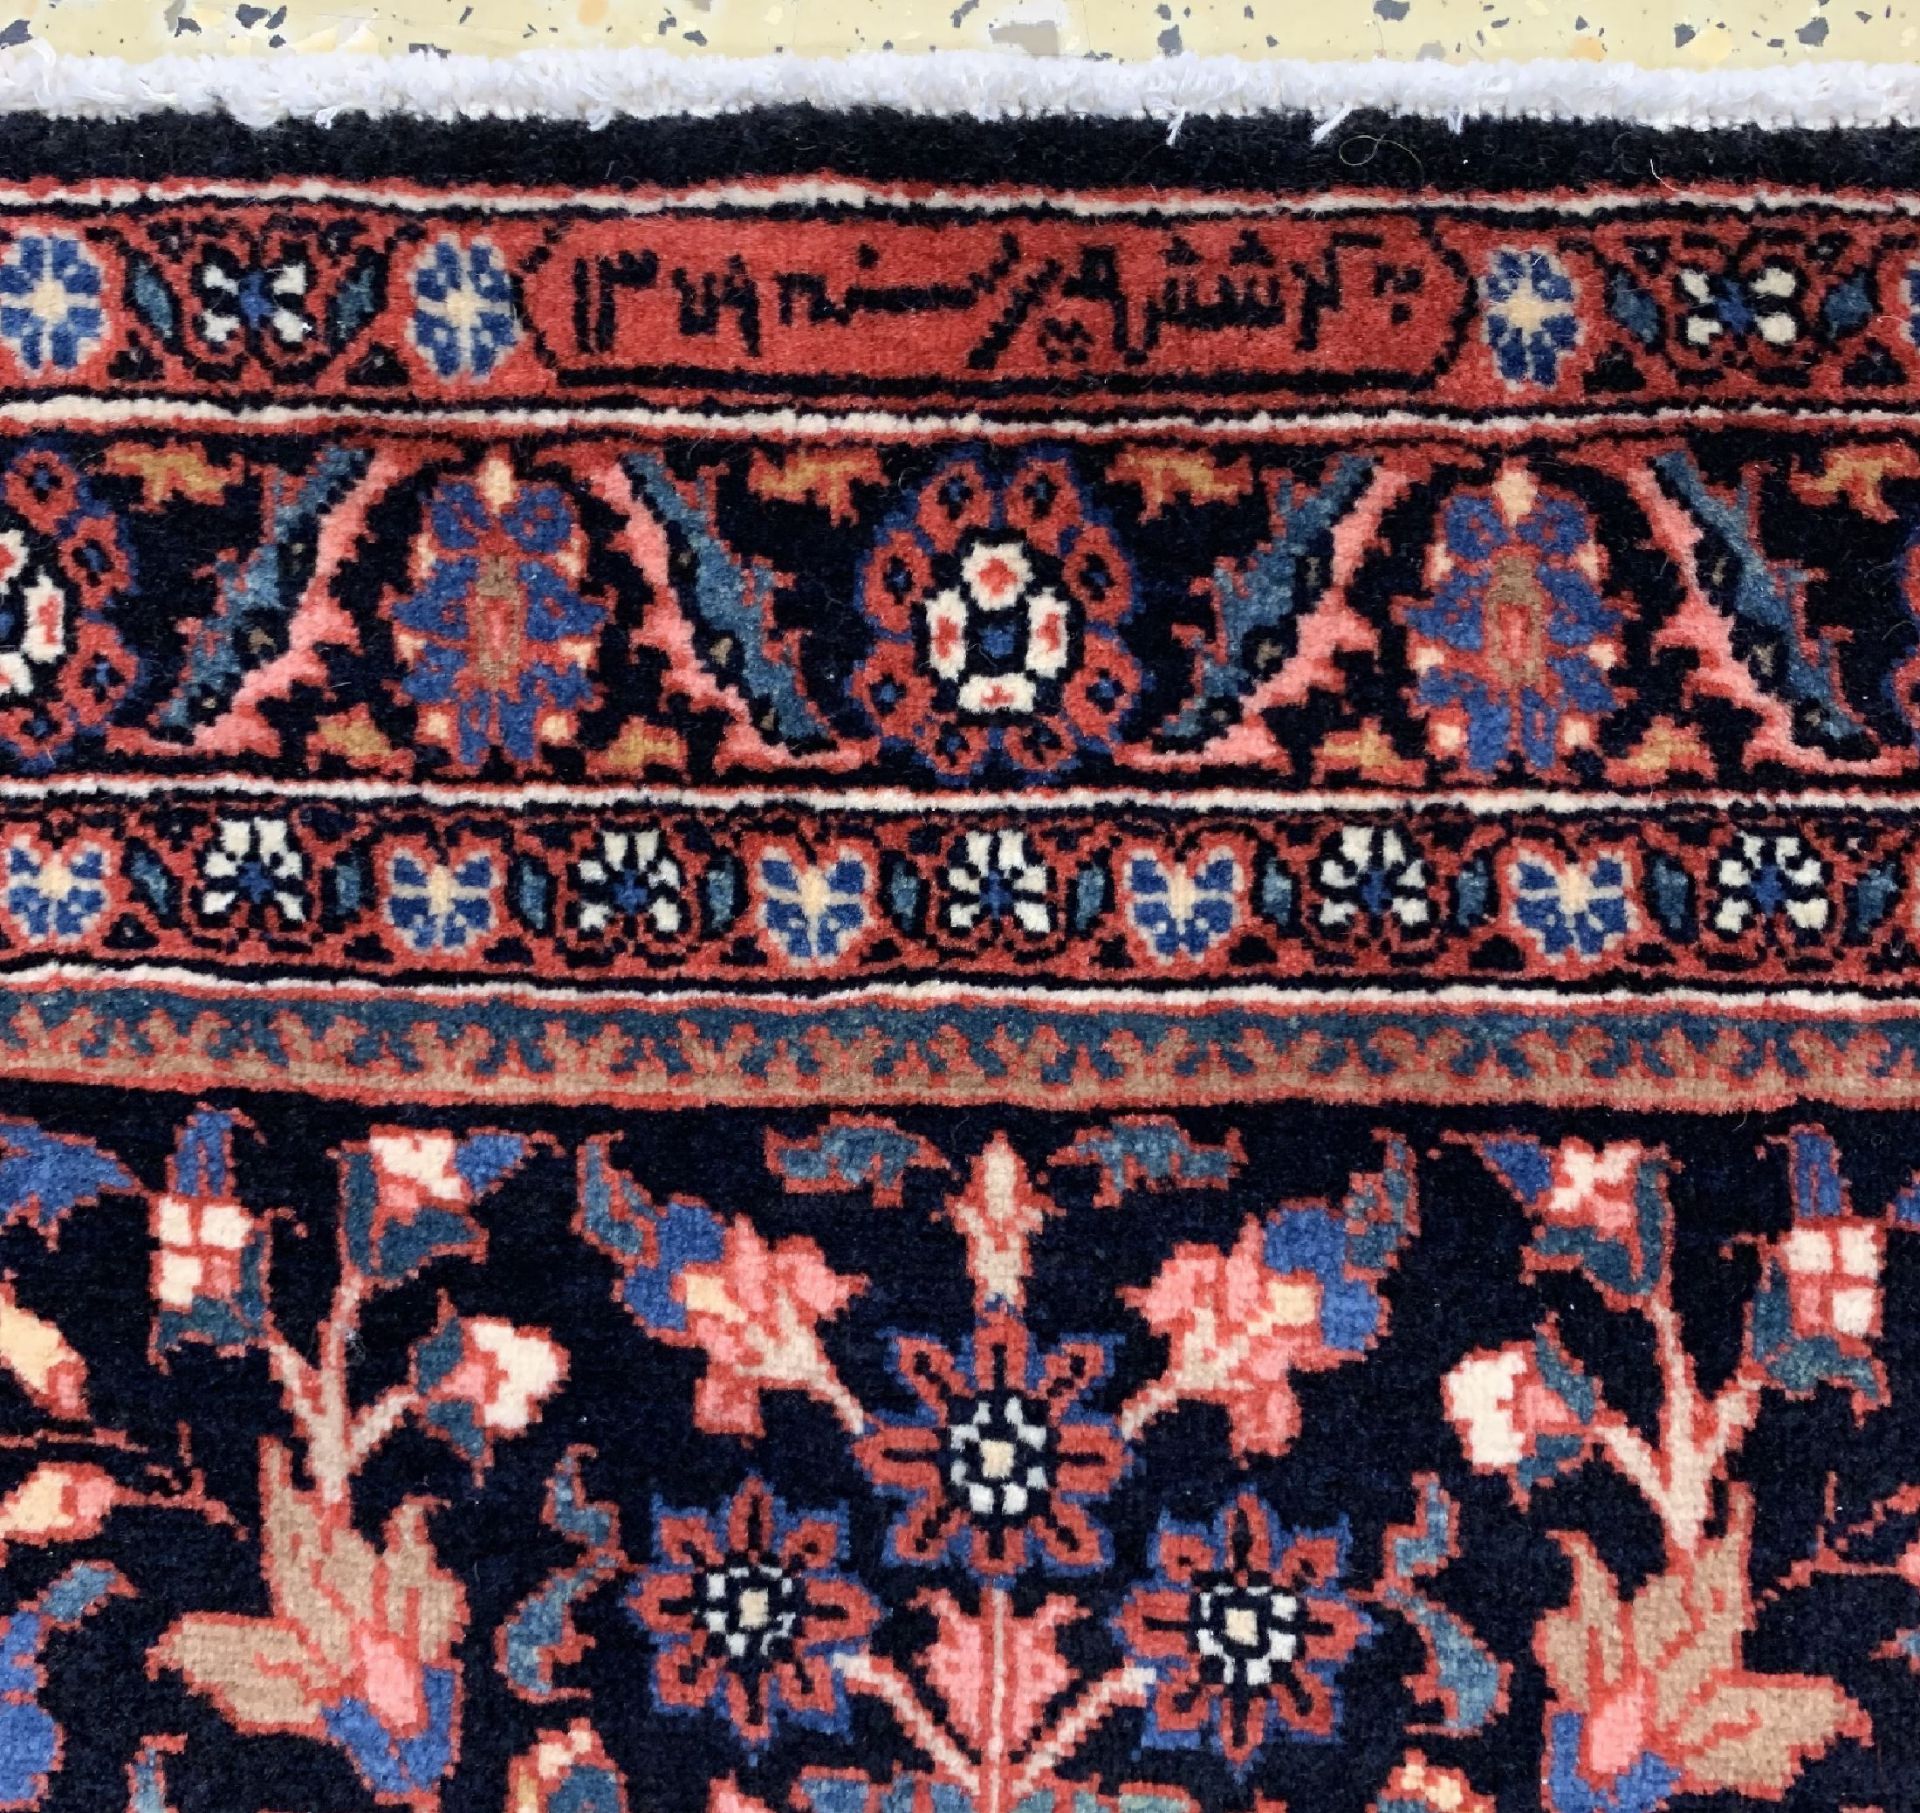 Sarogh'Ghiasabad'Kork fein, Persien, signiert & datiert - Bild 4 aus 6